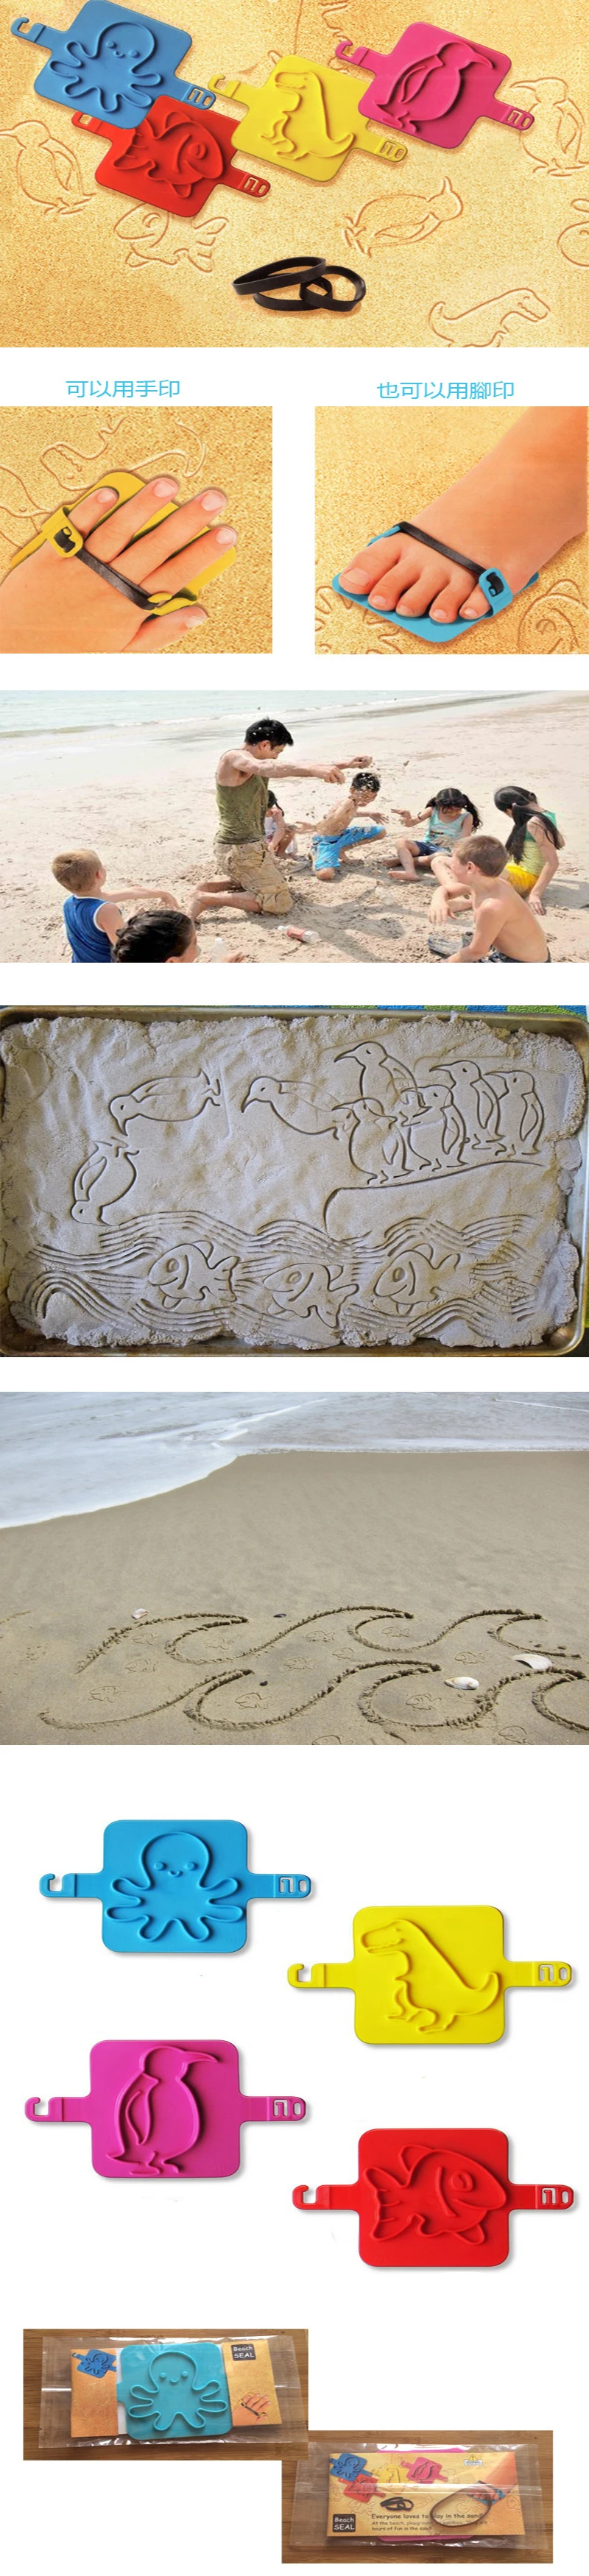 PIKAALAFAN милые дети весело пляж штамп мультфильм Животные детская пляжная печать игрушка DIY Осьминог Пингвин рыбы динозавр штампа ребенка